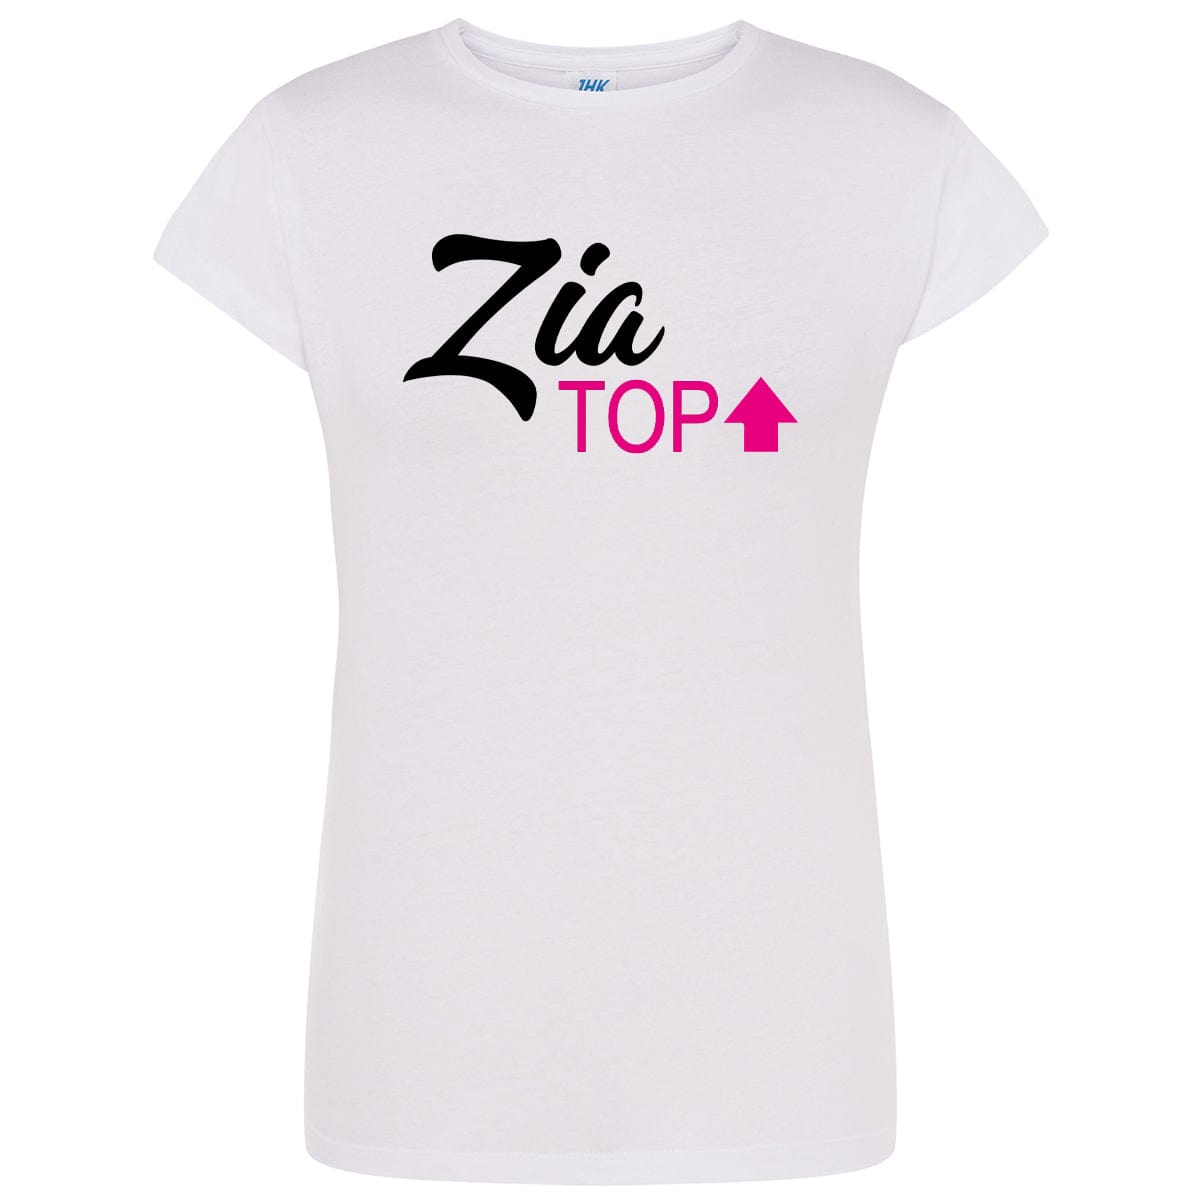 Lol T-Shirt T-shirt S / Bianca con scritta nera e fuxia Zia Top